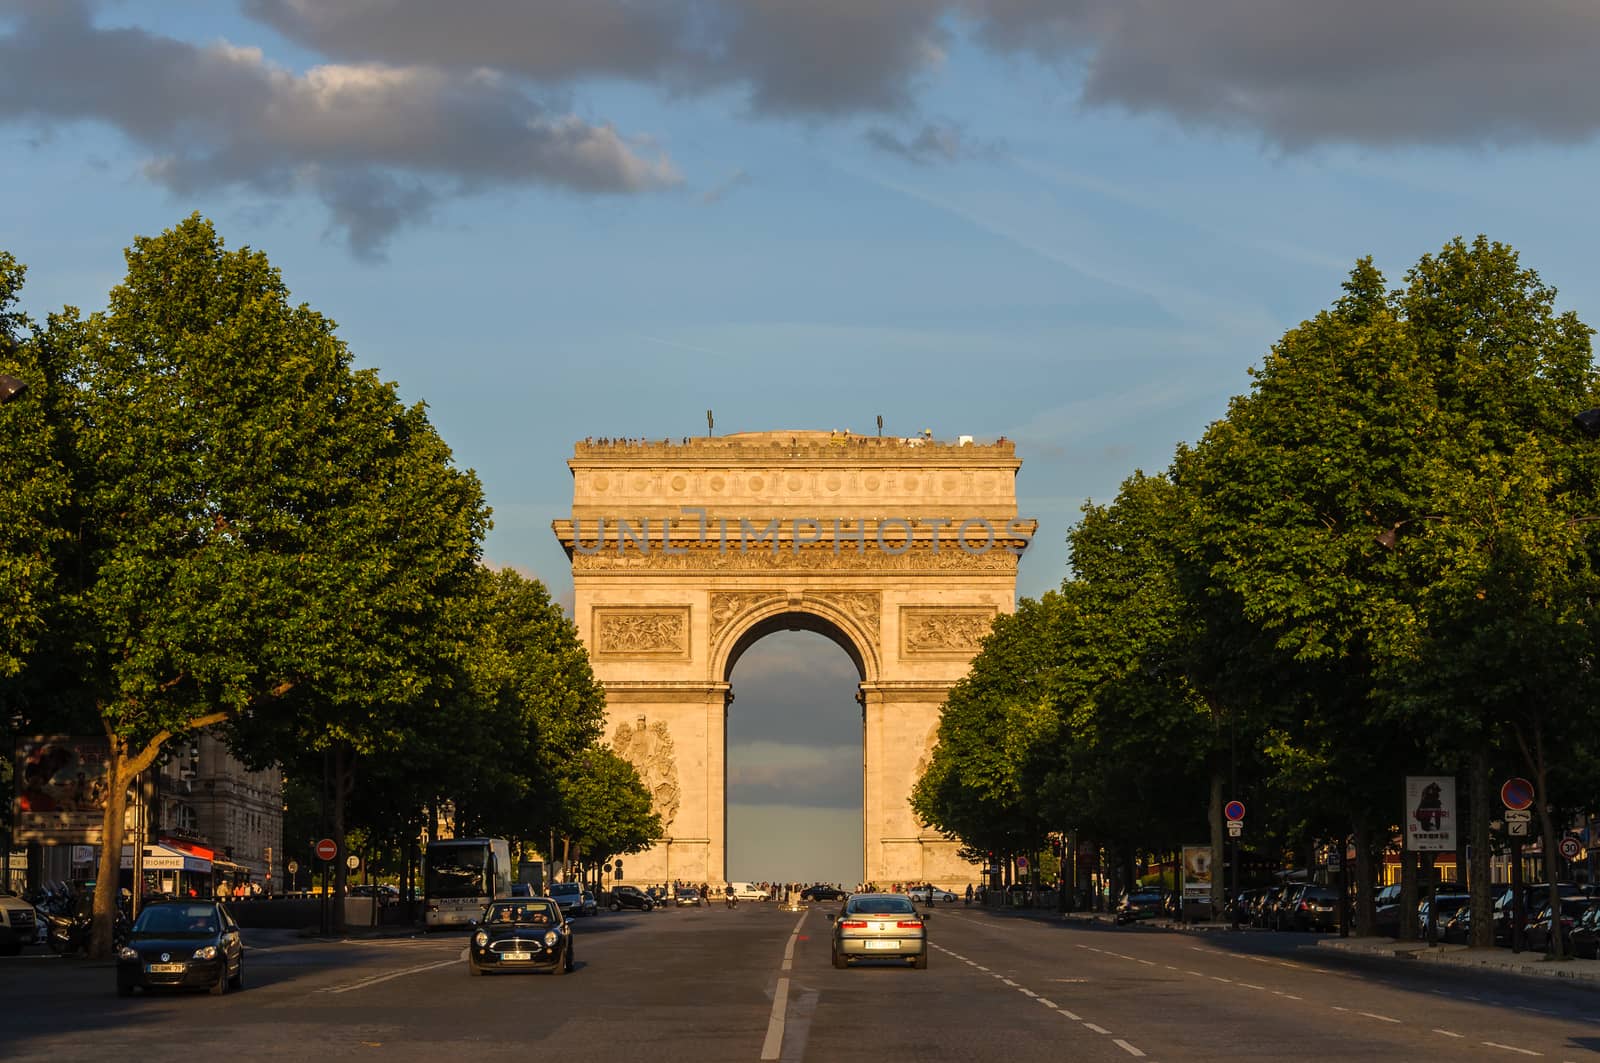 The Arc de Triomphe in Paris, France by dutourdumonde